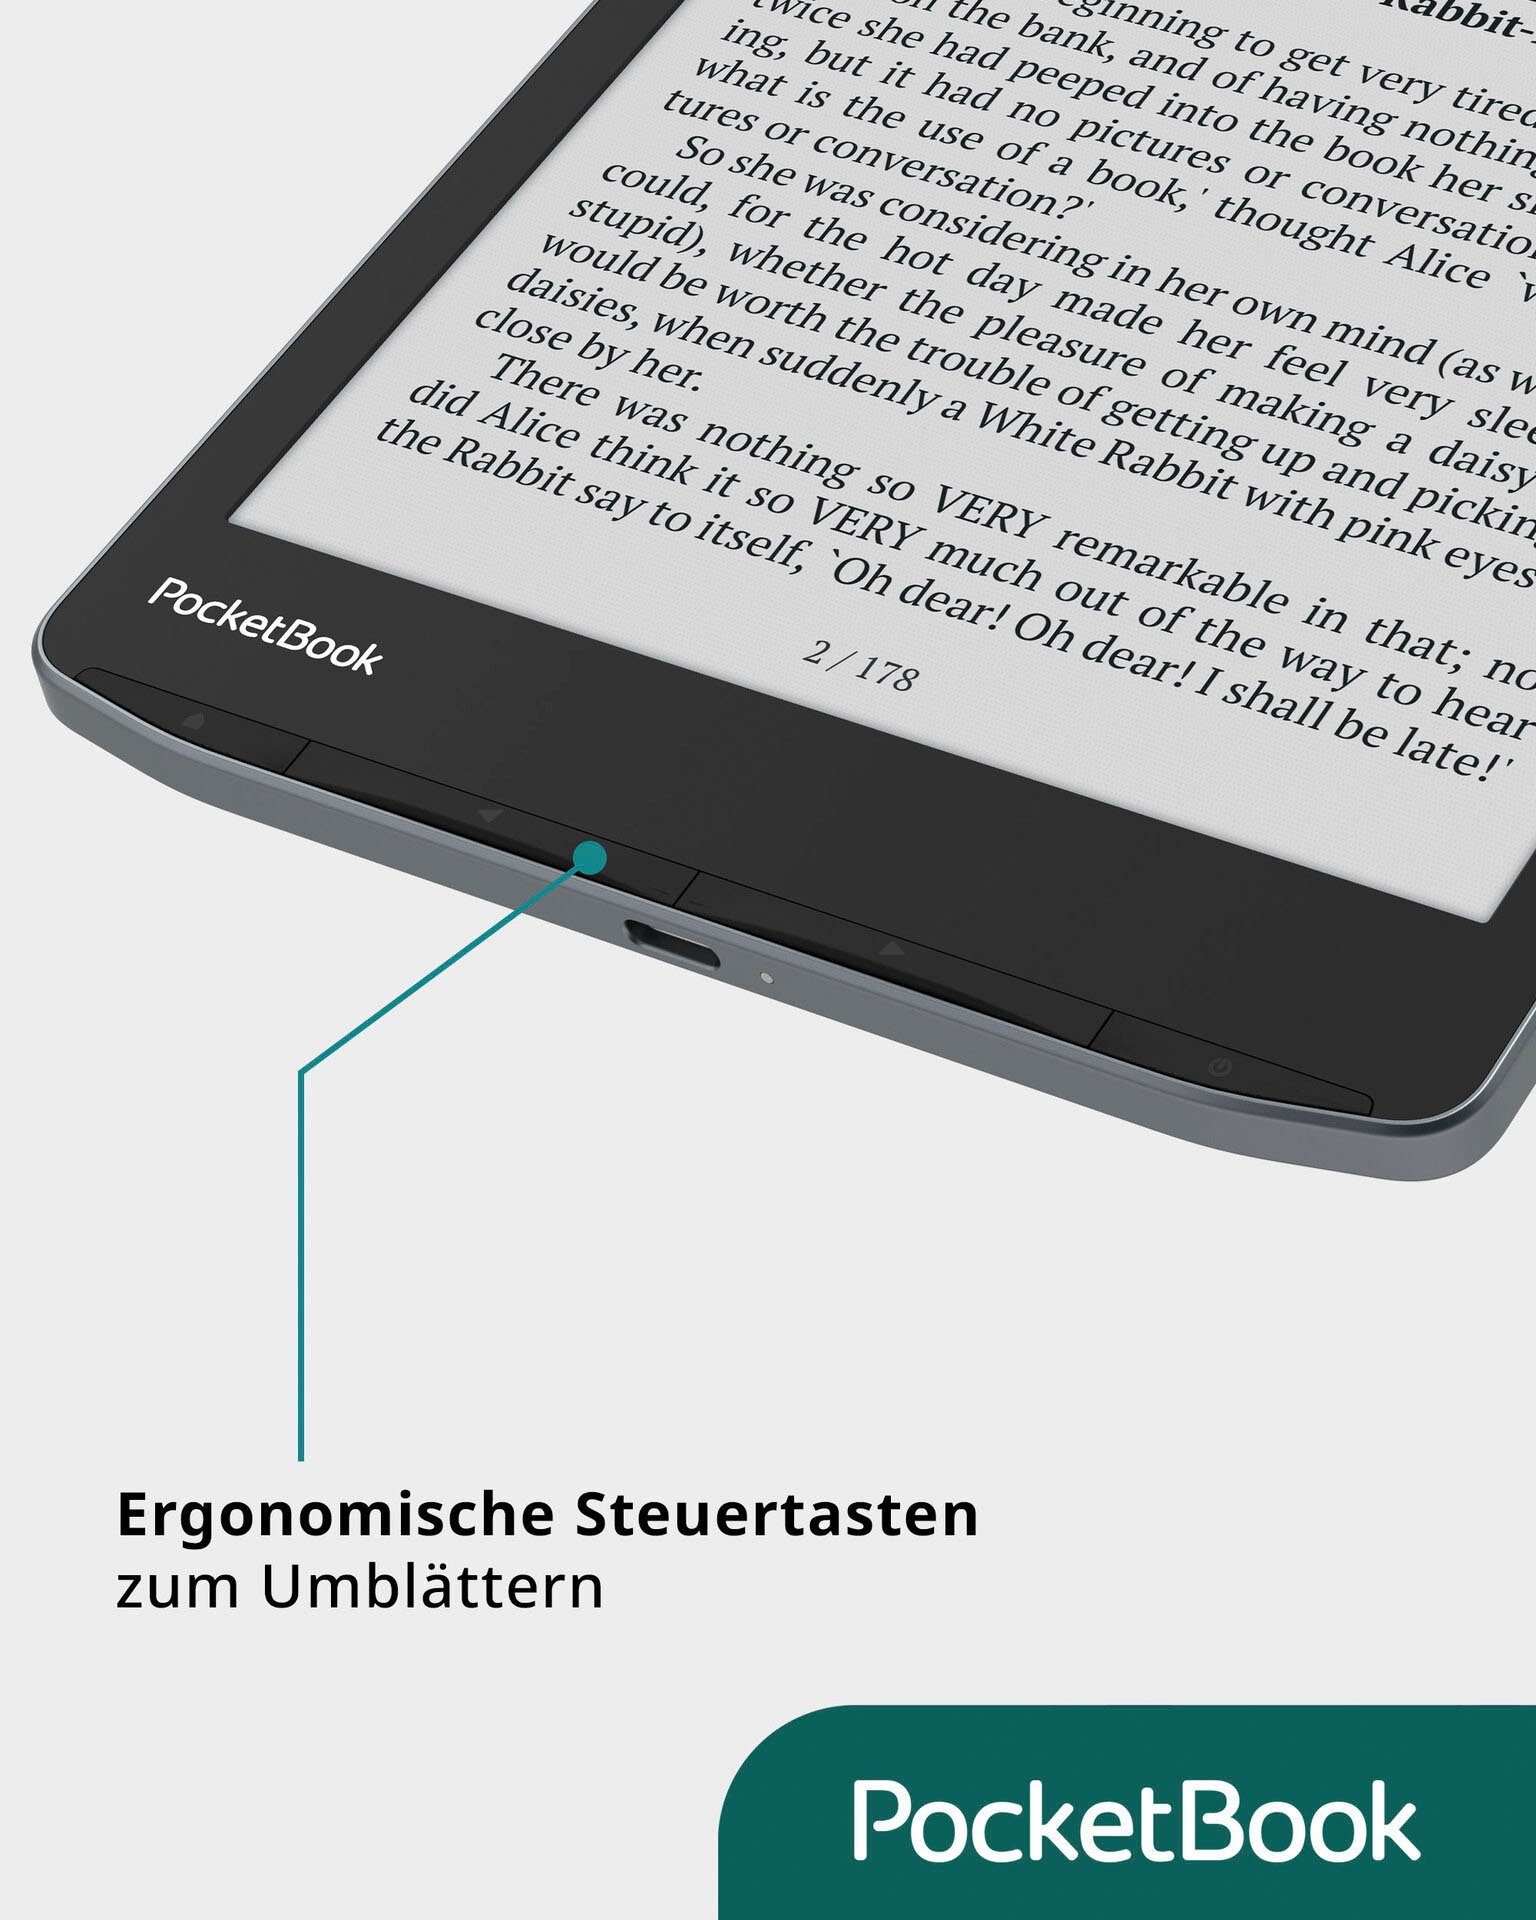 Reader 3 (7,8", und Lautsprecher 32 E-Book InkPad Bluetooth-Schnittstelle) mit Color E-Book PocketBook GB,